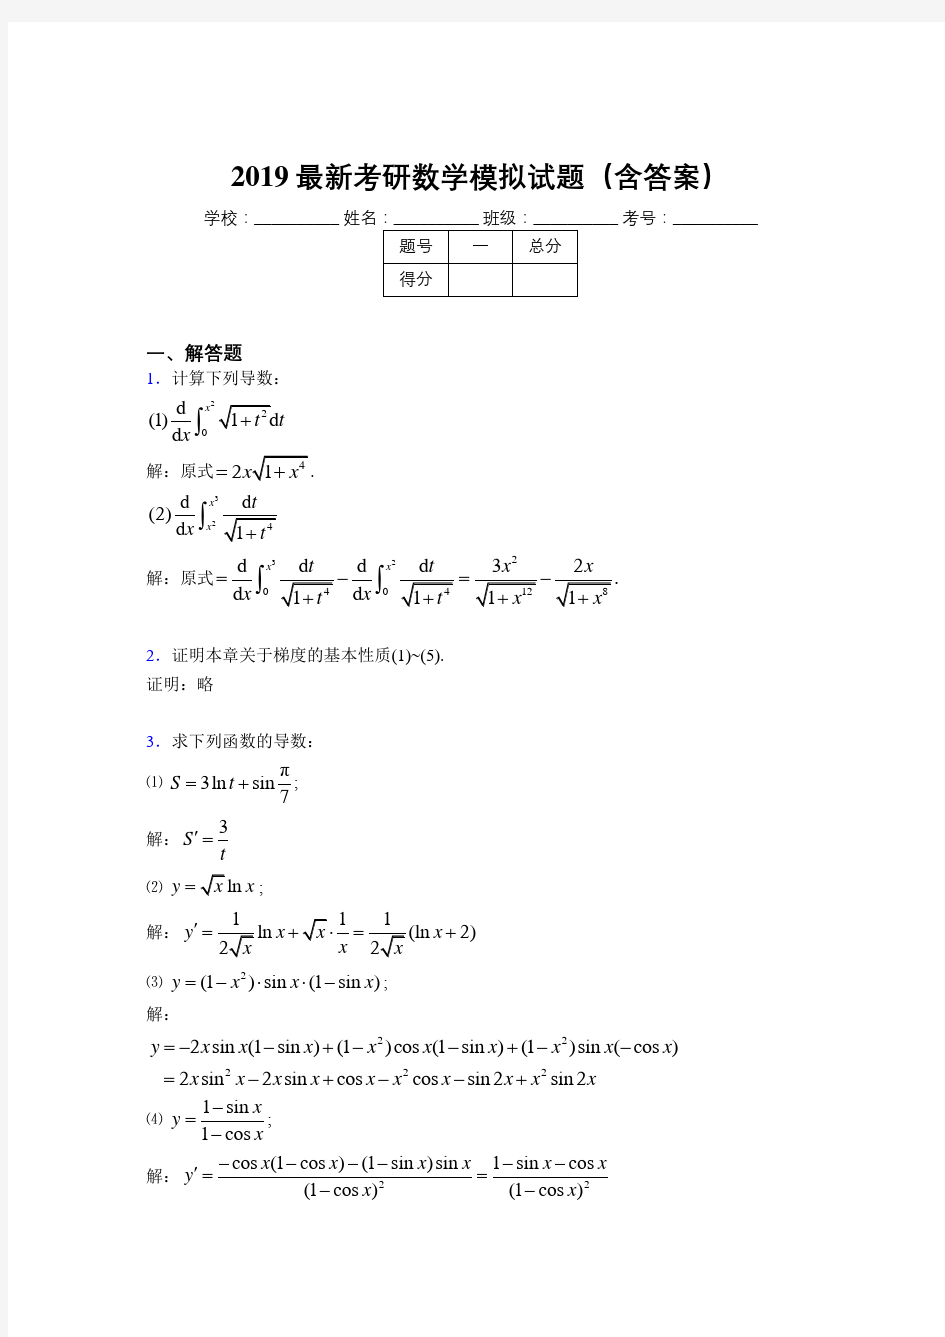 2019最新版考研数学模拟题库(含答案)